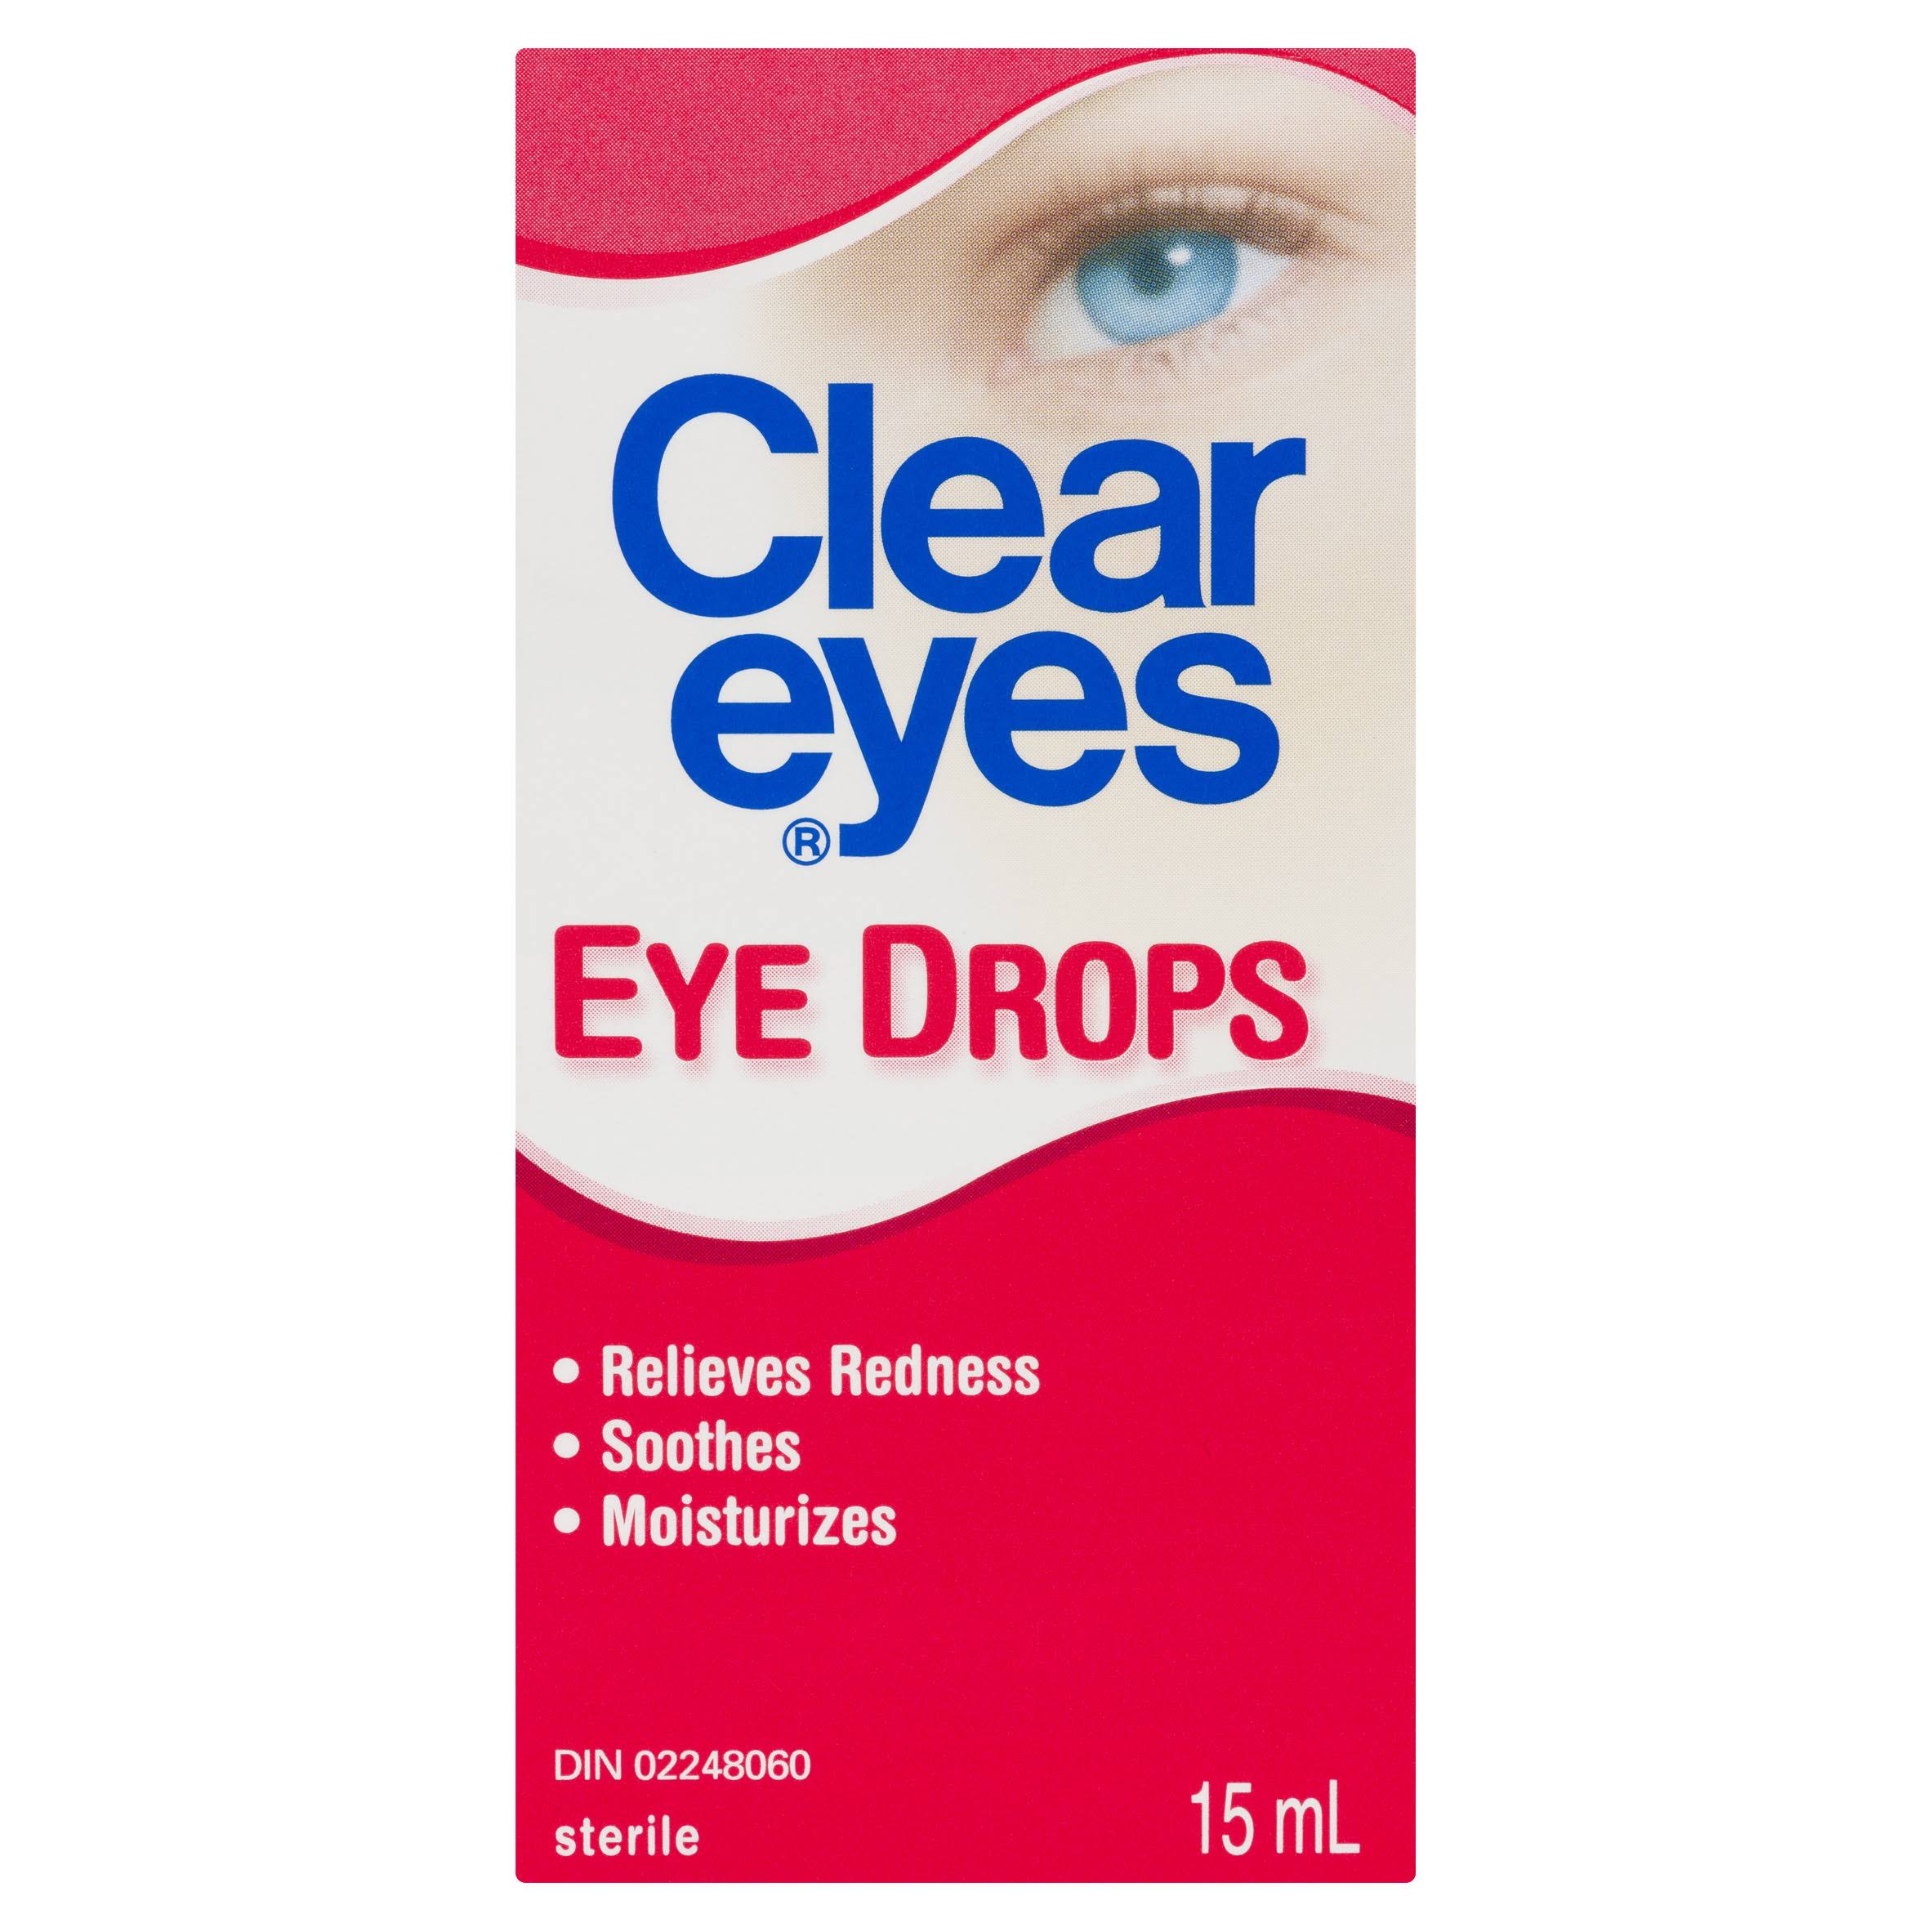 Clear Eyes Eye Drops - 15ml